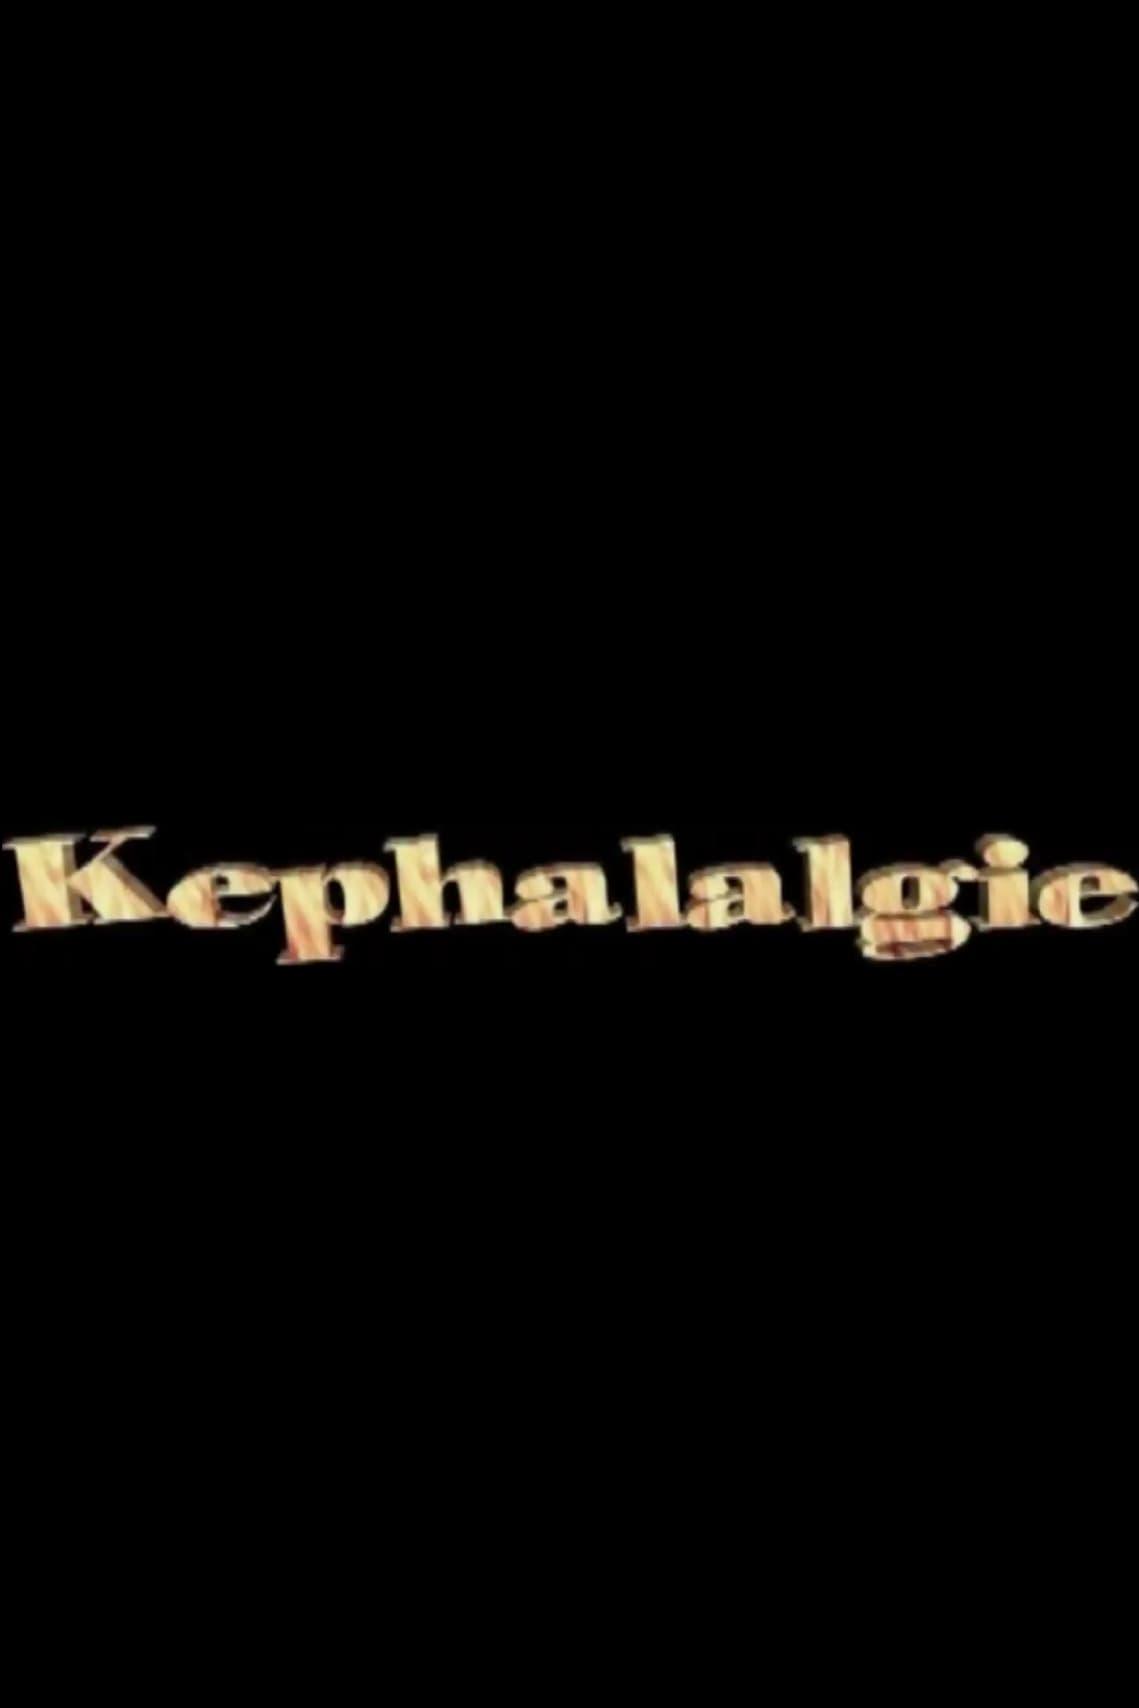 Kephalalgie poster